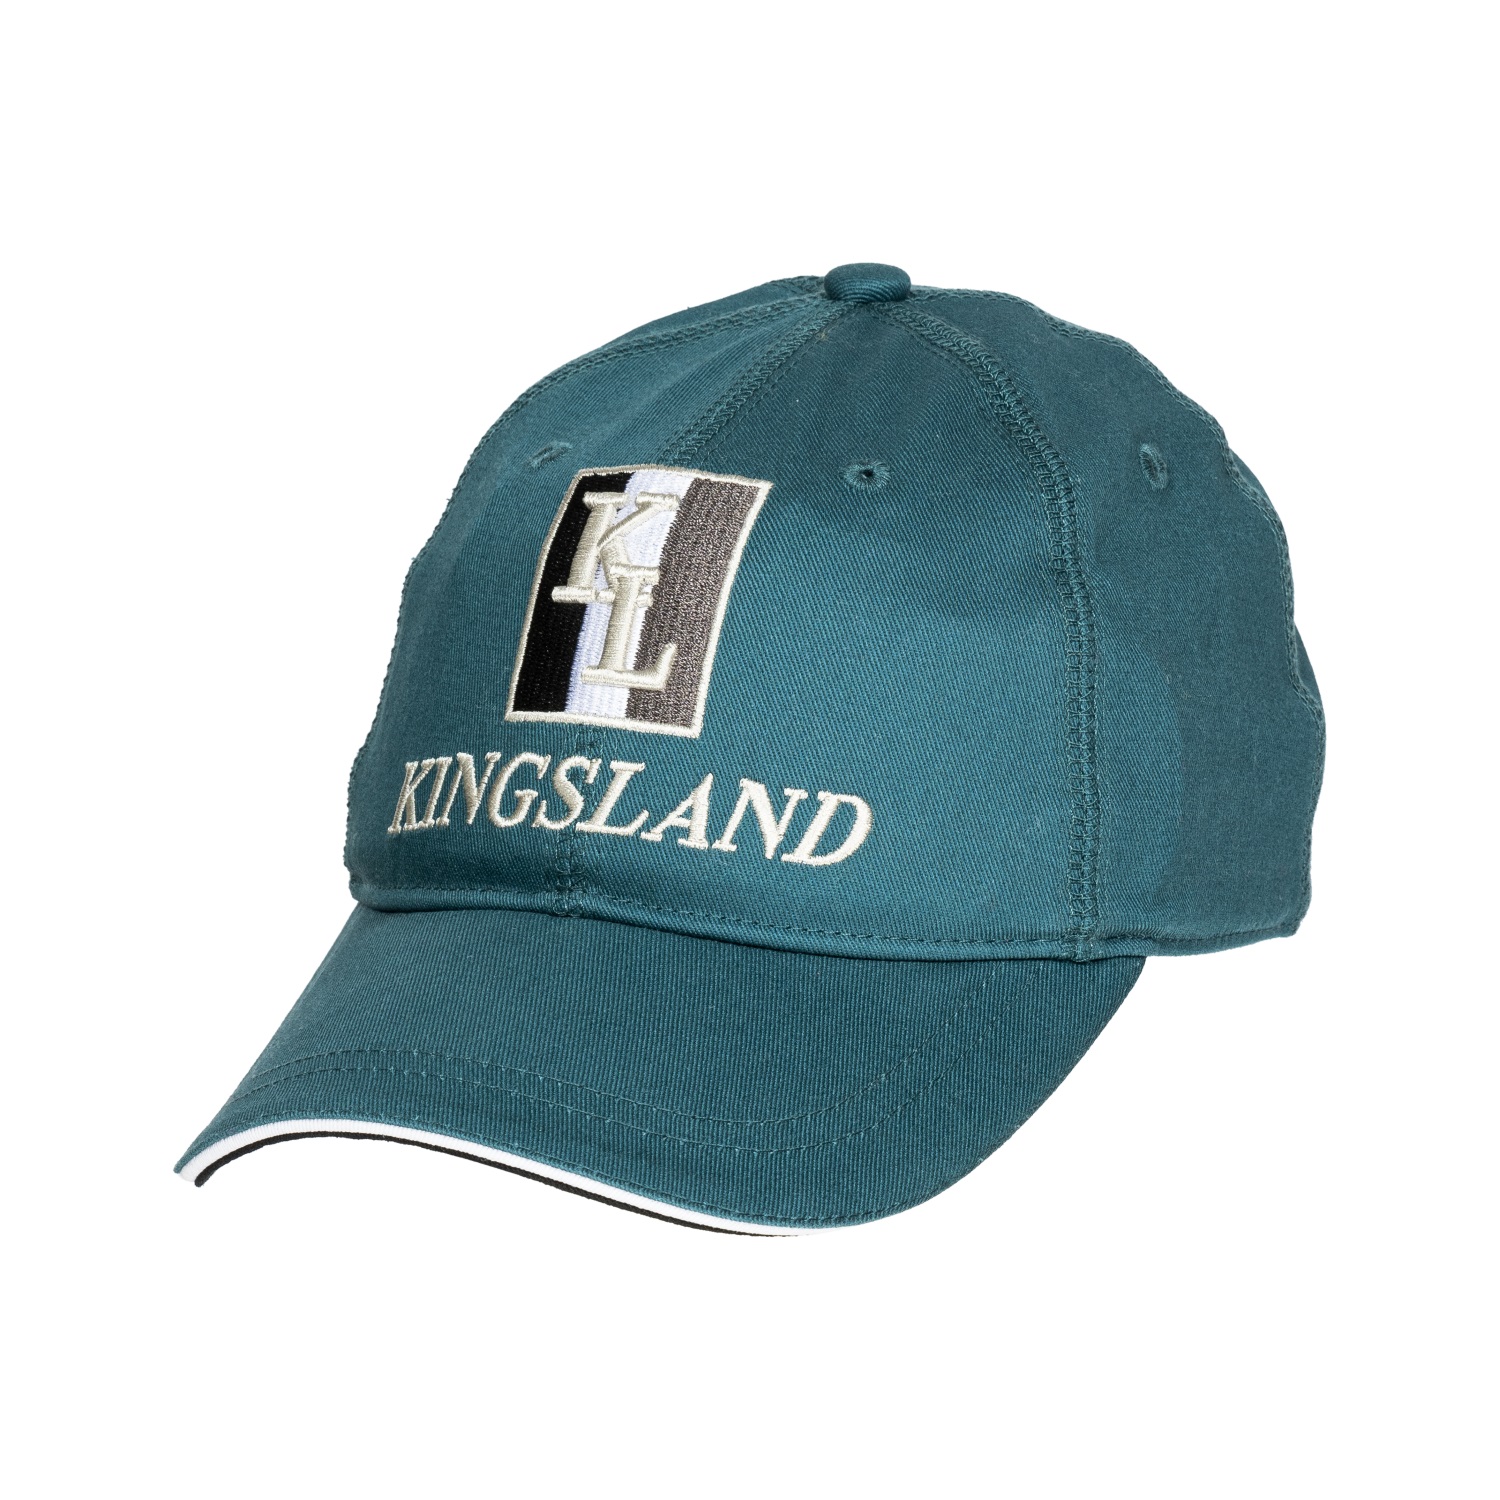 KINGSLAND Unisex Classic Limited Cap, Basecap - grey - onesize - 7